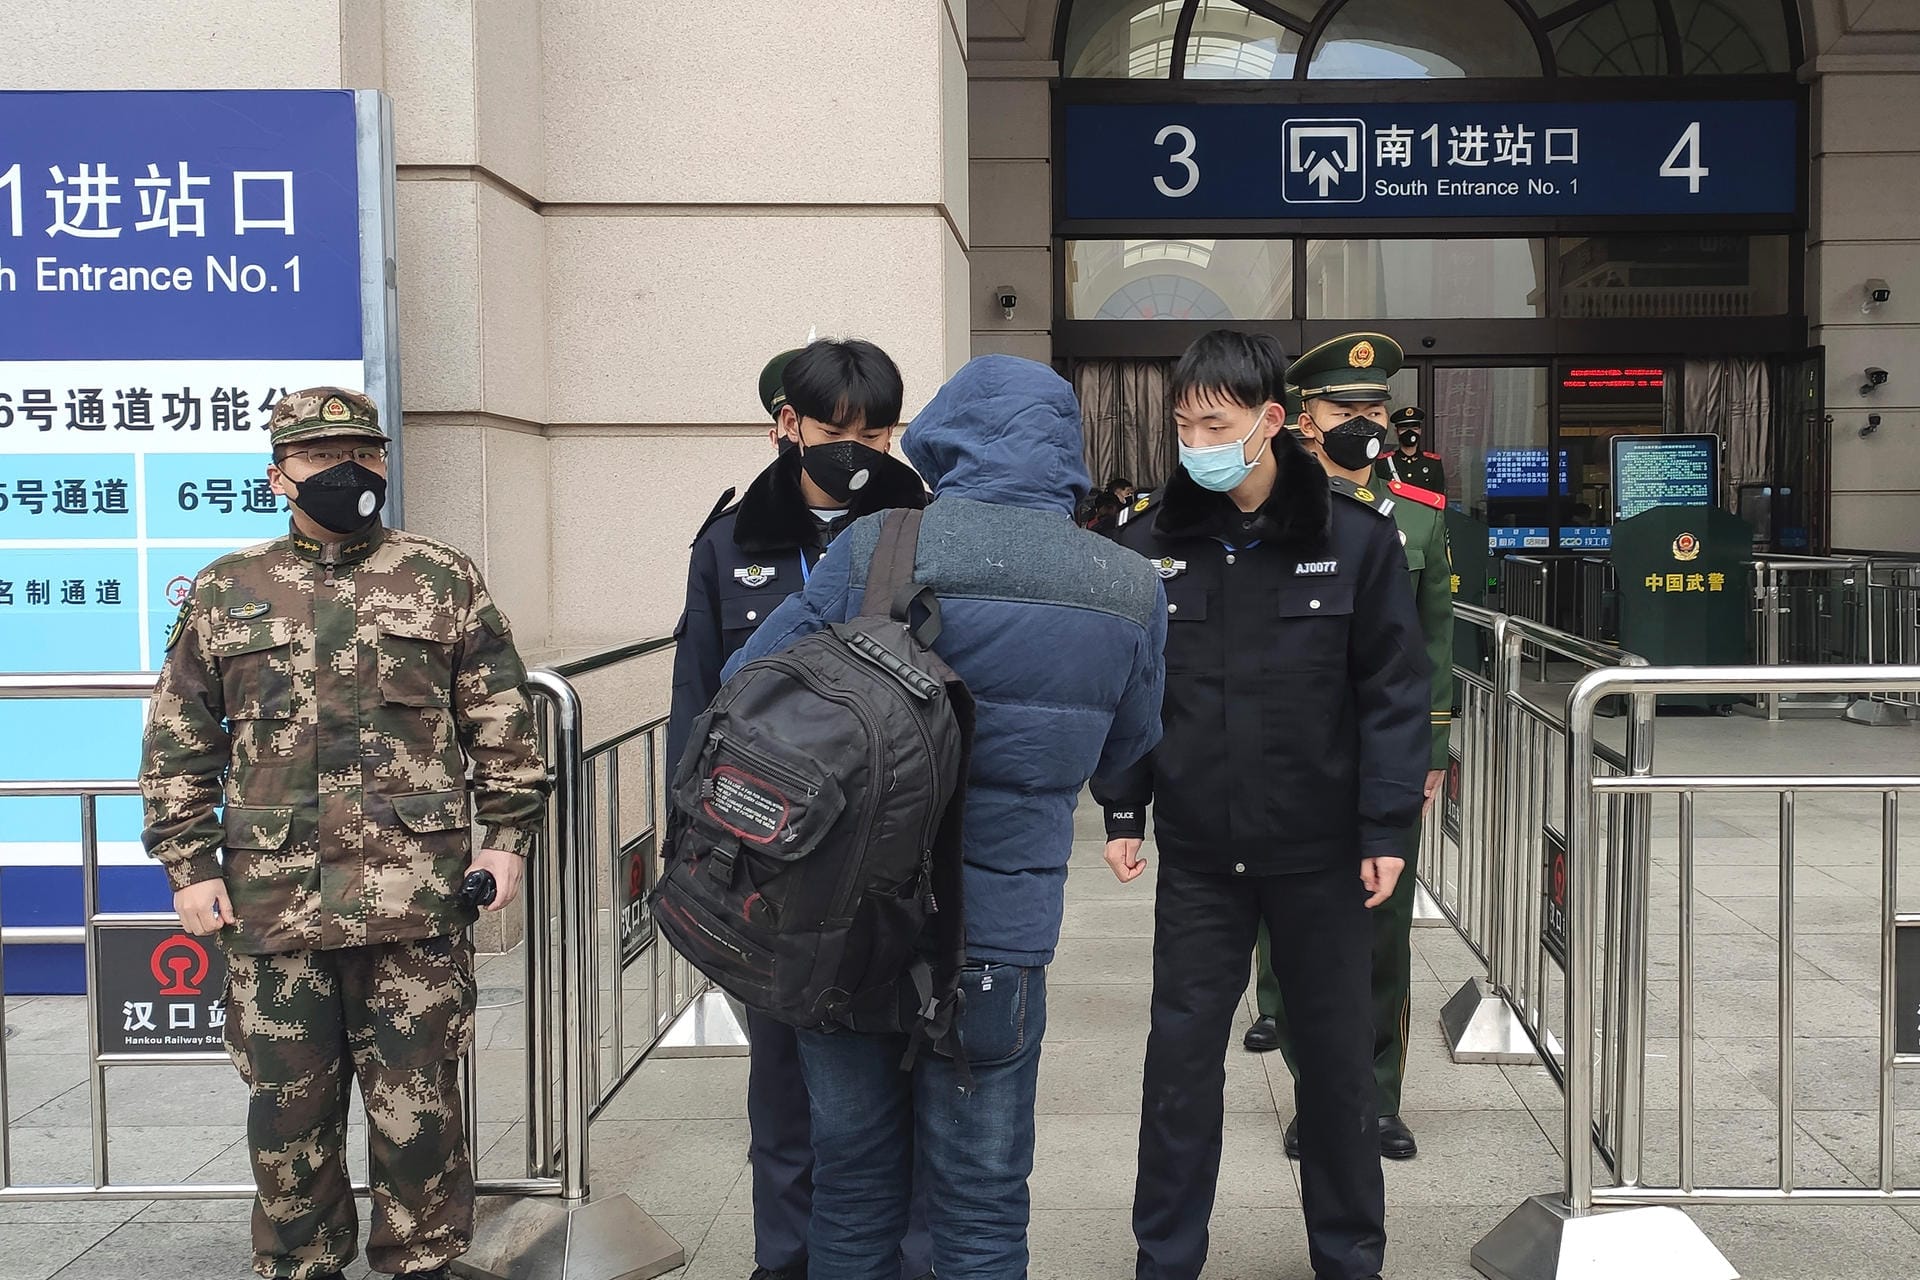 Sicherheitsbeamte kontrollieren eine Person am Eingang des Bahnhofs Hankou in Wuhan.